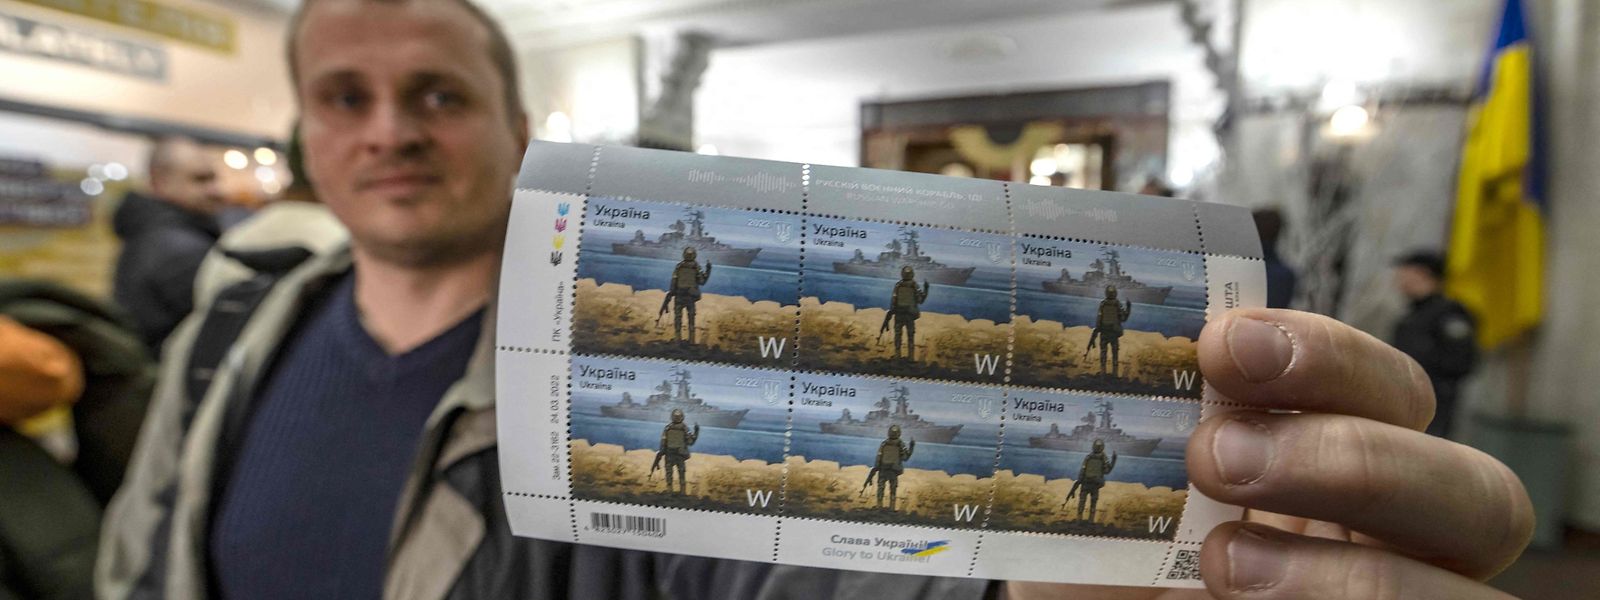 Em Kiev formaram-se filas nas estações de correio para comprar este novo selo, símbolo da resistência contra os russos.